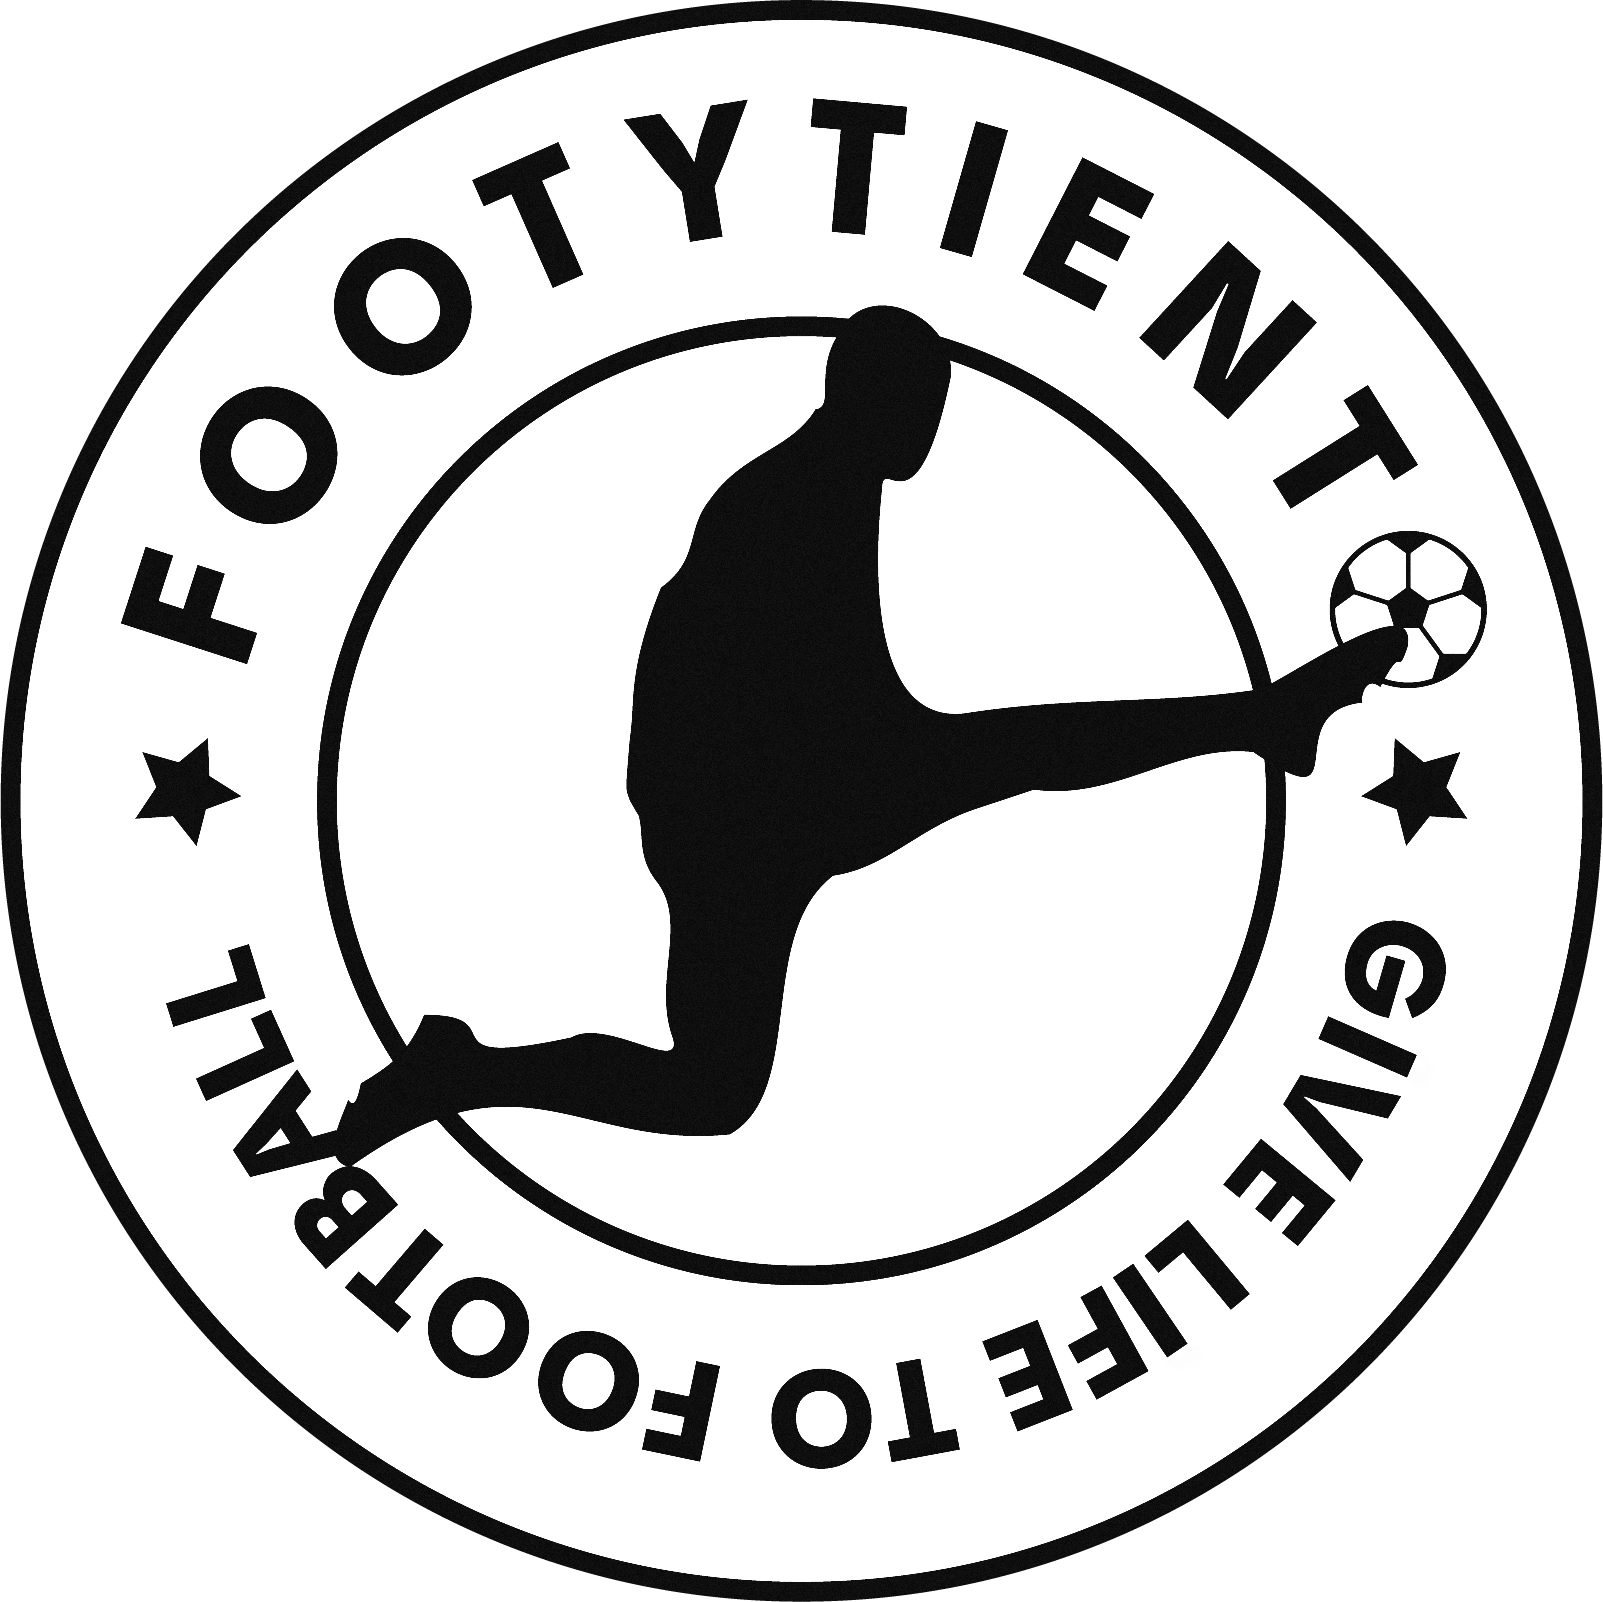 www.footytiento.com